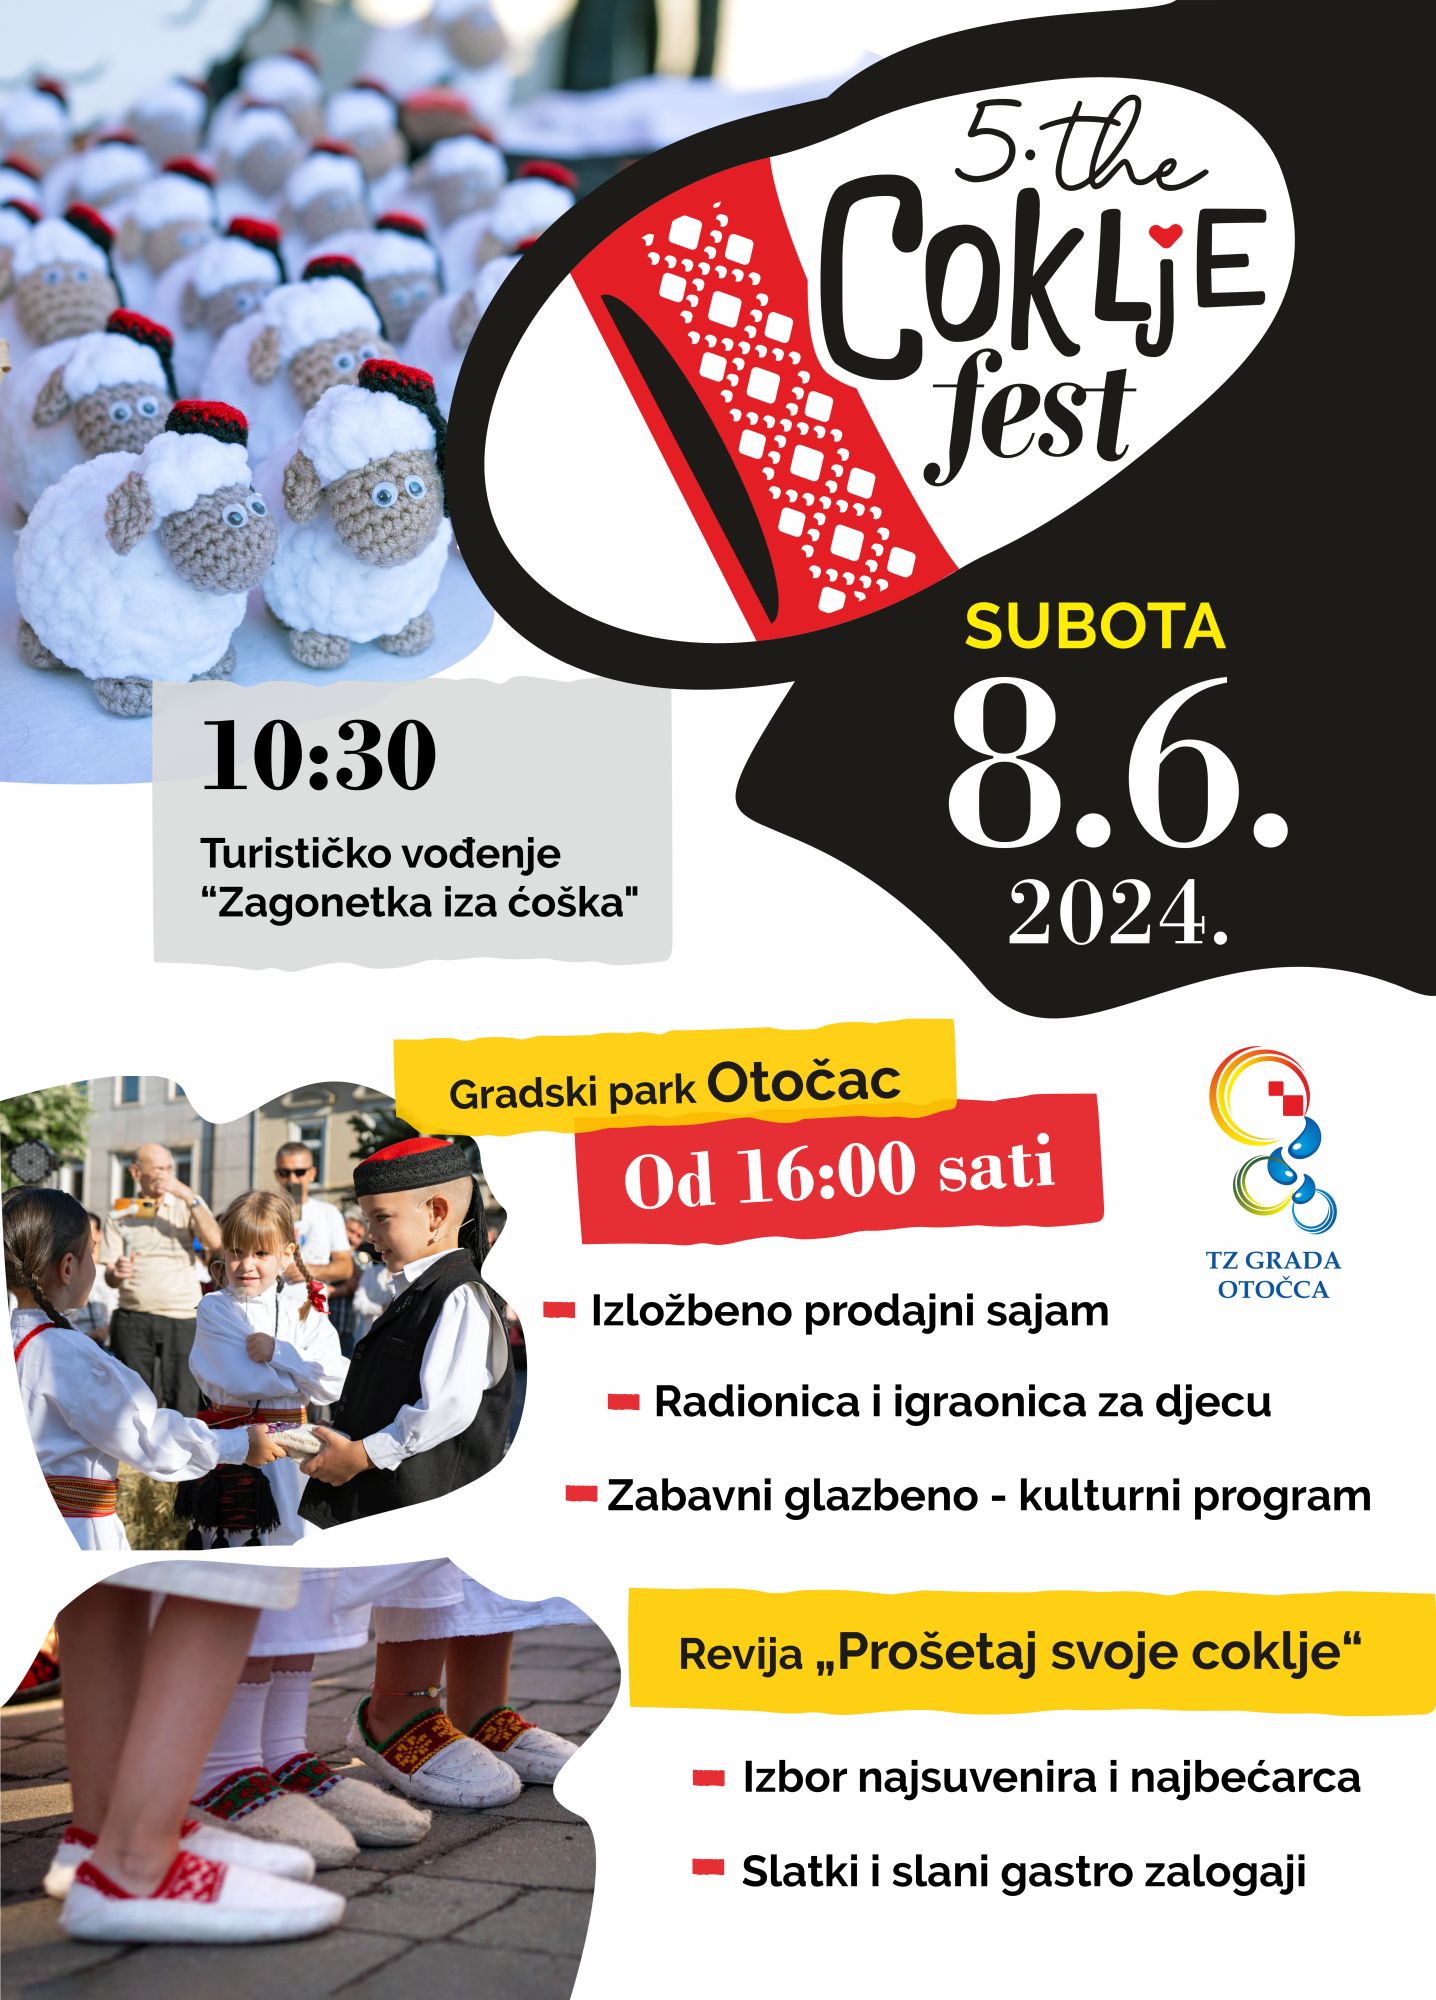 5th Annual Coklje Festival 